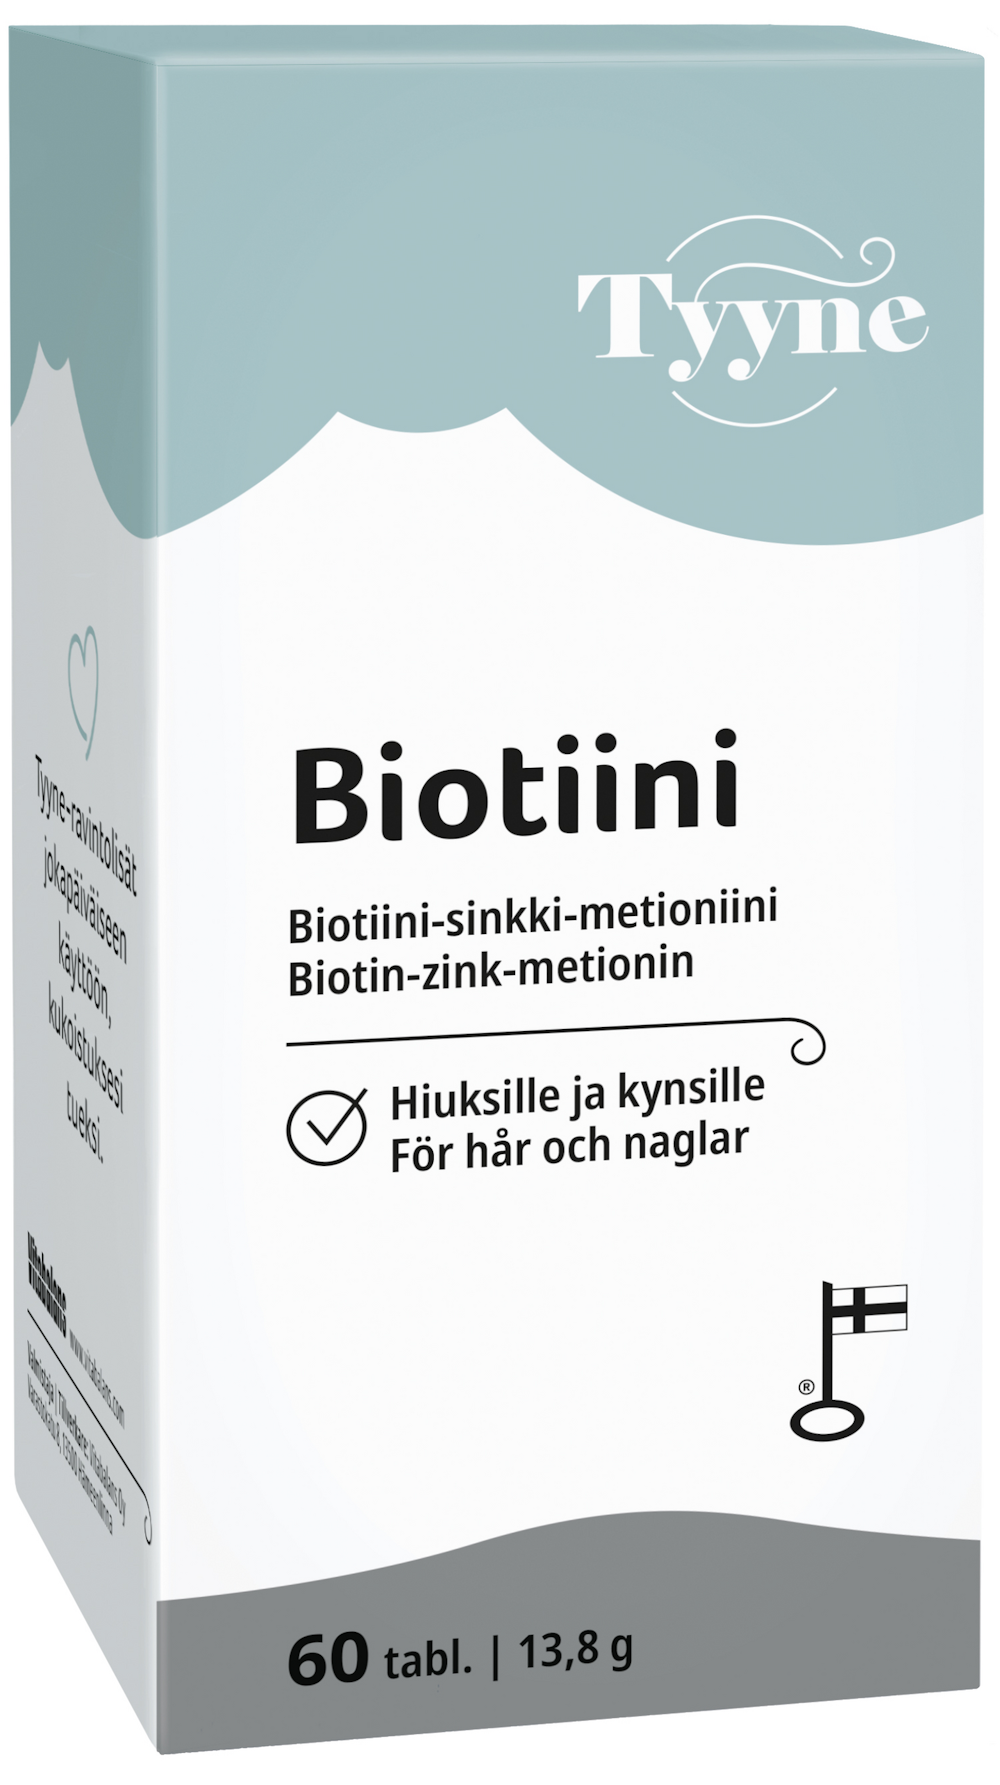 Vitabalans Tyyne Biotiini biotiini-sinkki-metioniini 60 tabl 32g —  HoReCa-tukku Kespro